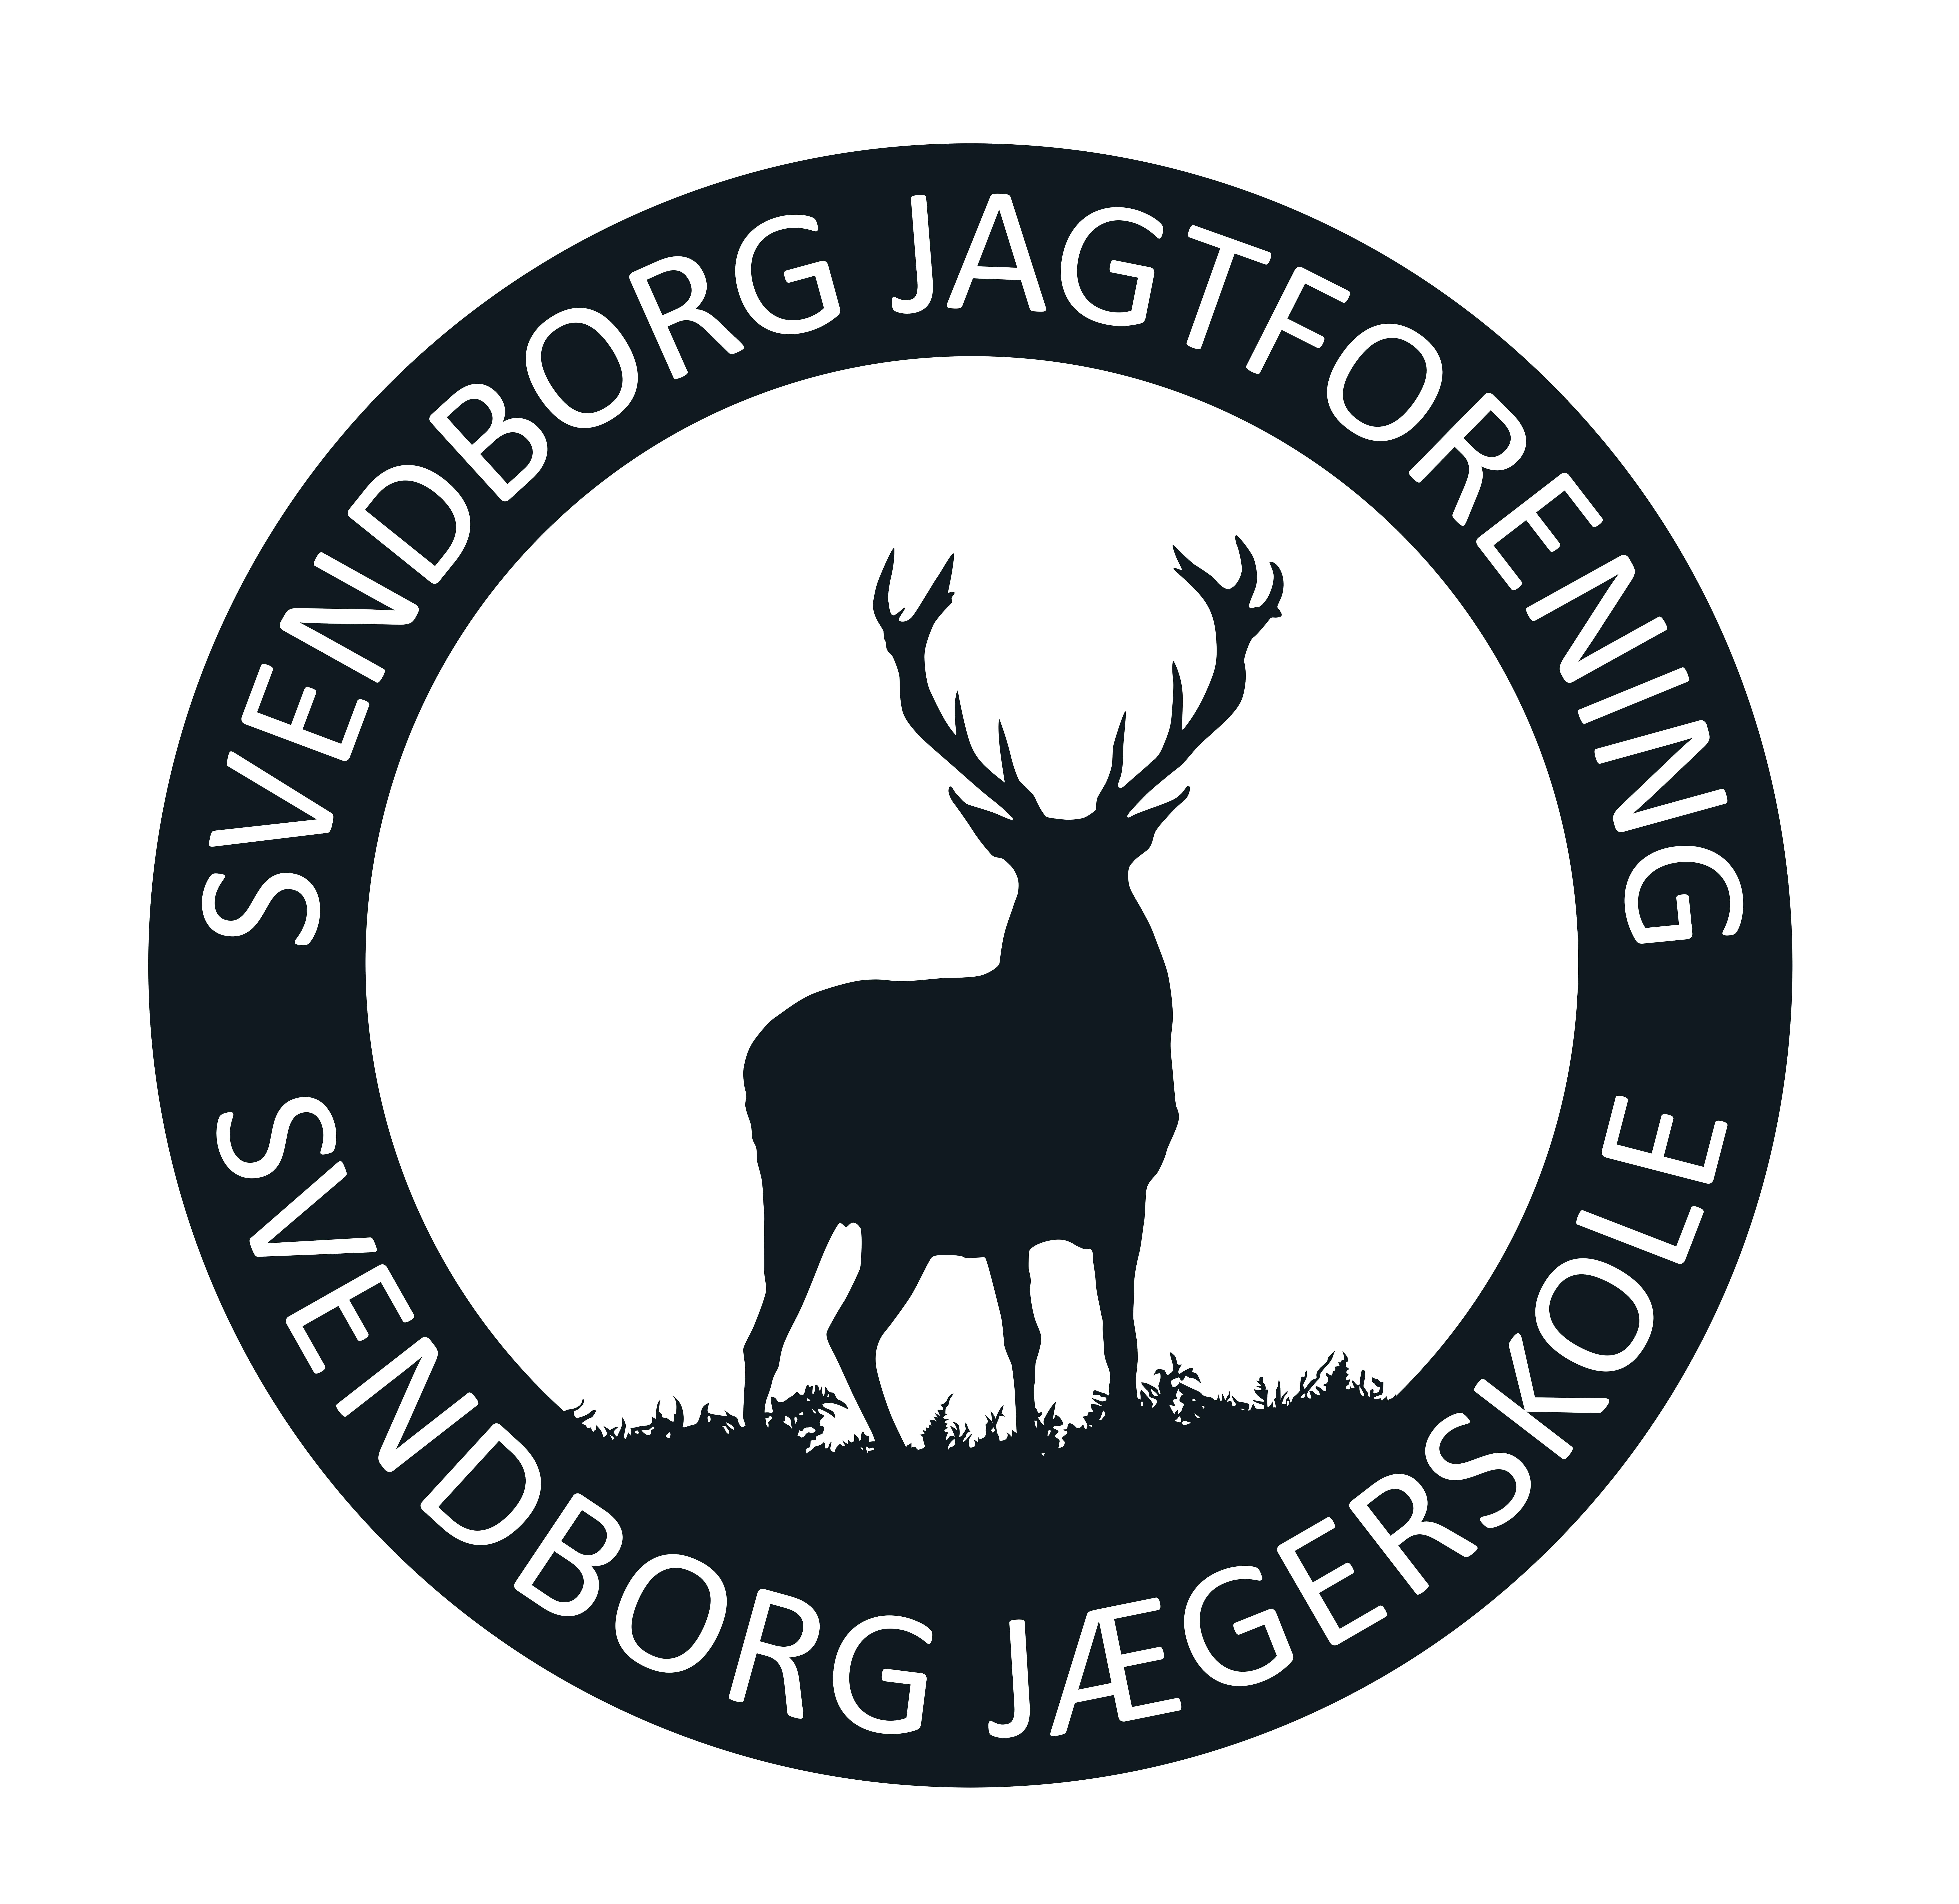 Svendborg Jagtforening og Jægerskole RUNDT LOGO outline